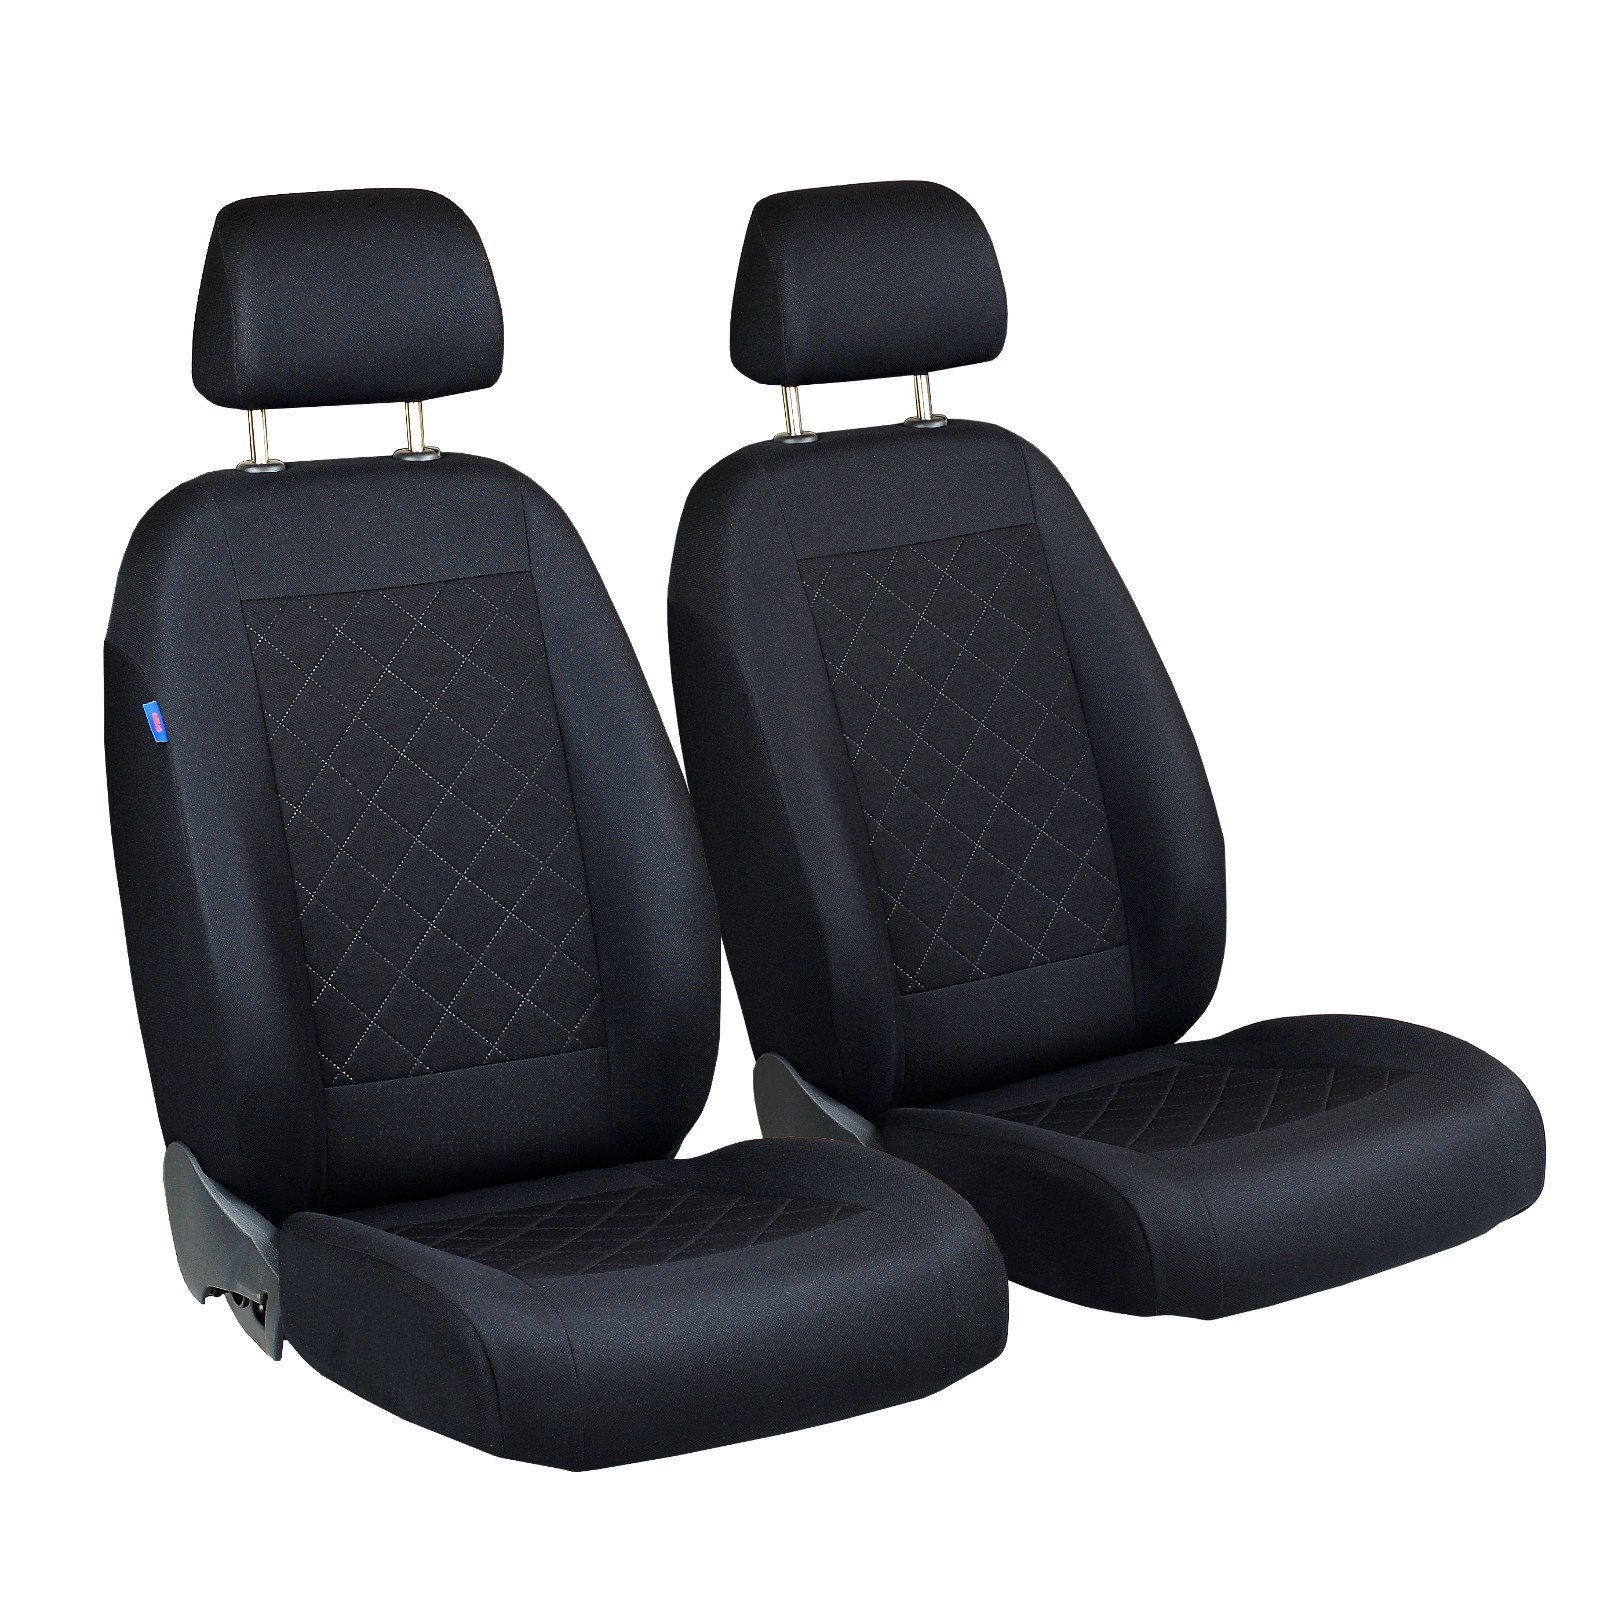 Sitzbezüge für Volkswagen JETTA - für Fahrer und Beifahrer - Farbe Premium Schwarz gepresstes Karomuster